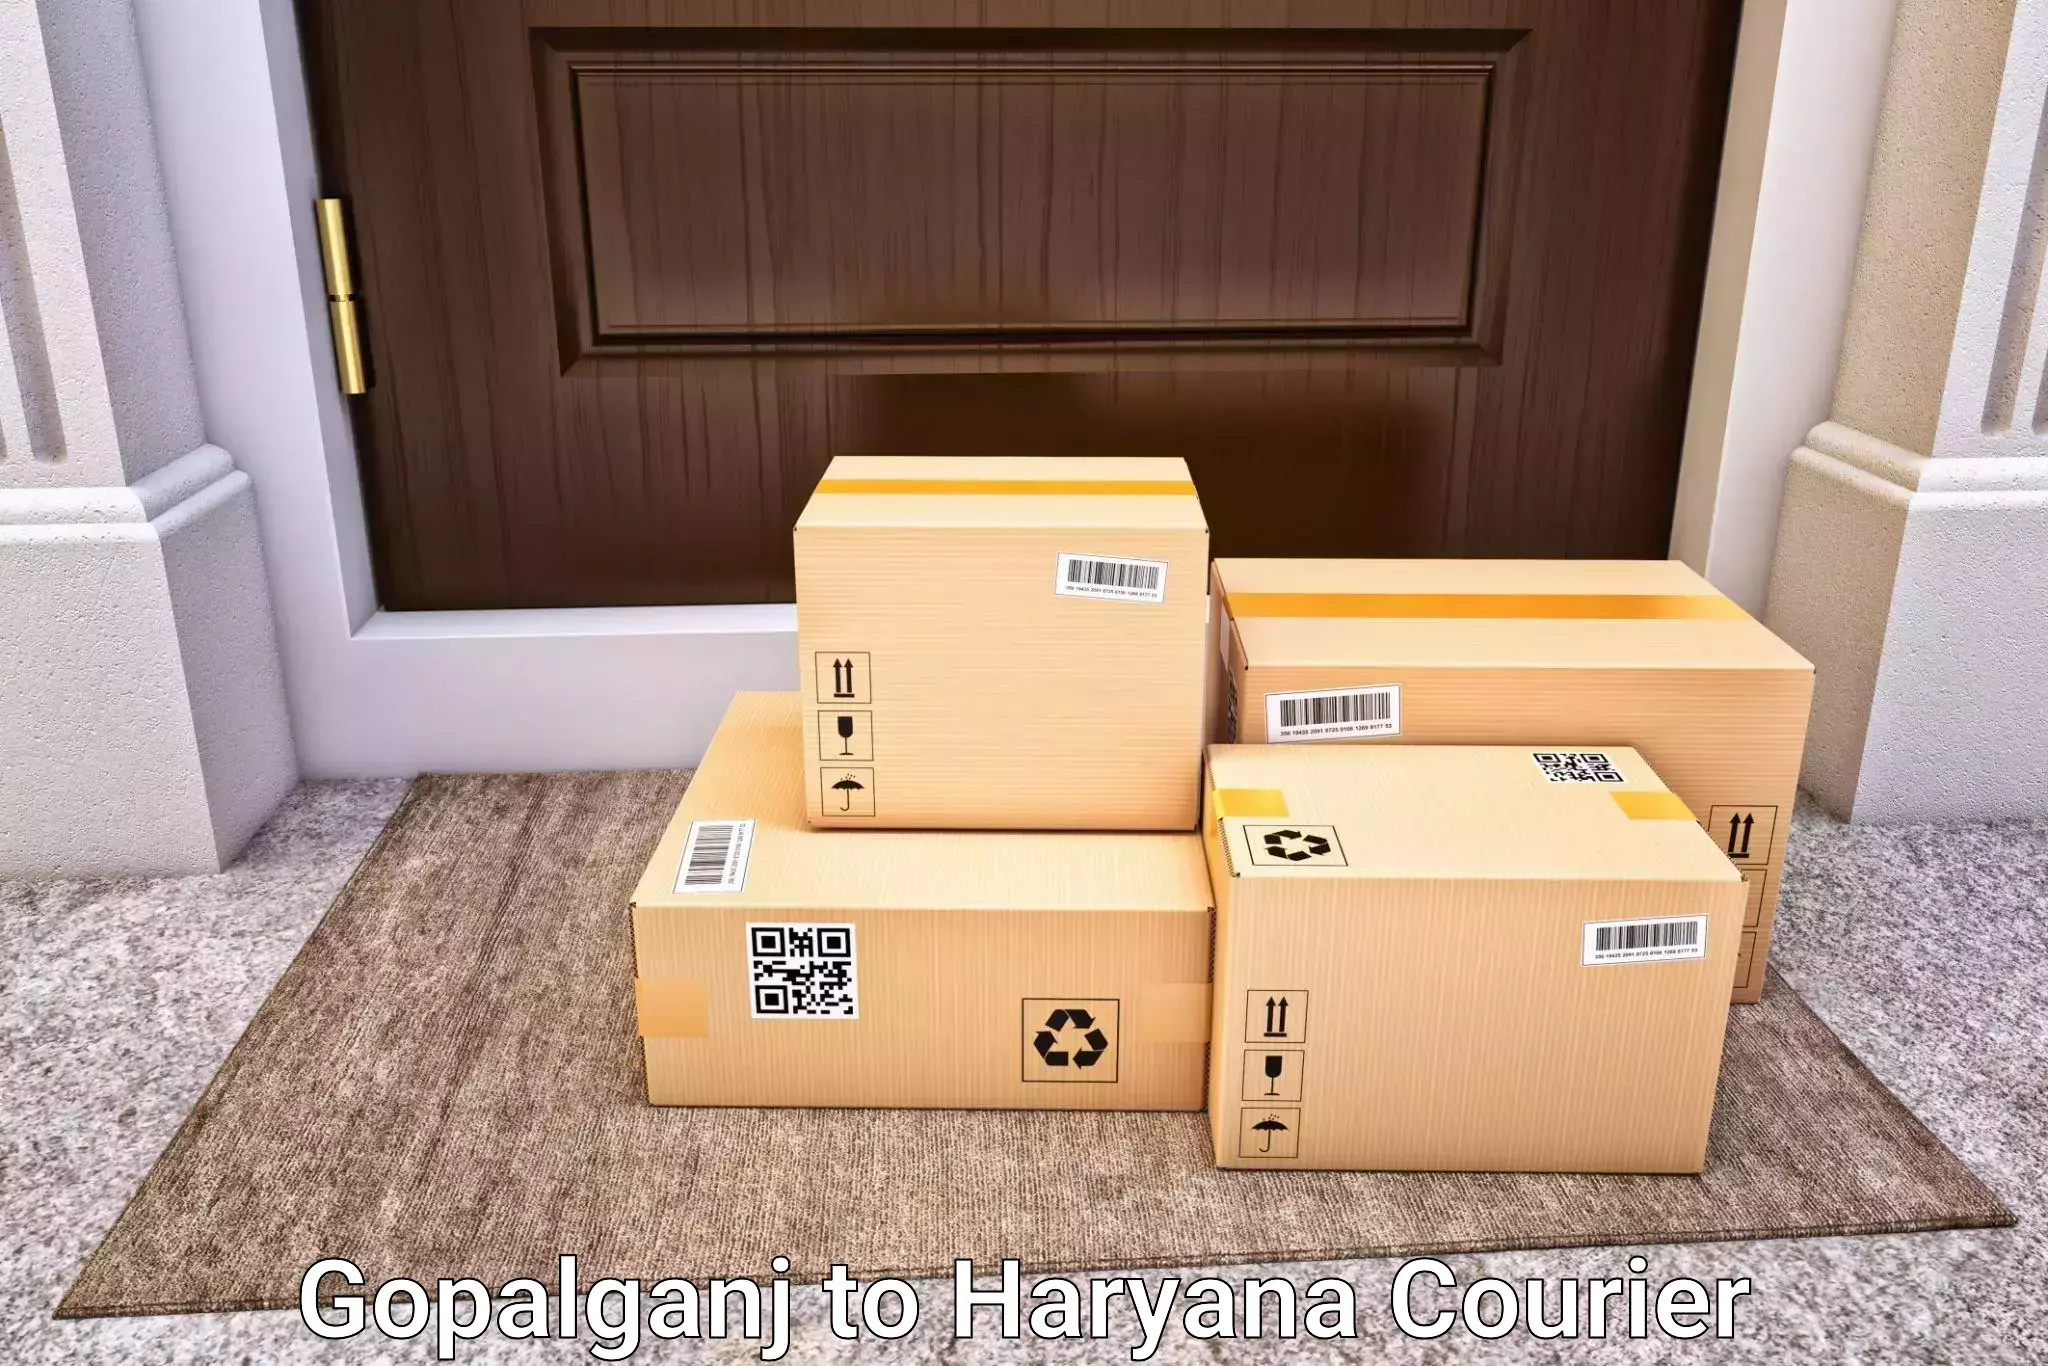 Baggage delivery management in Gopalganj to IIIT Sonepat